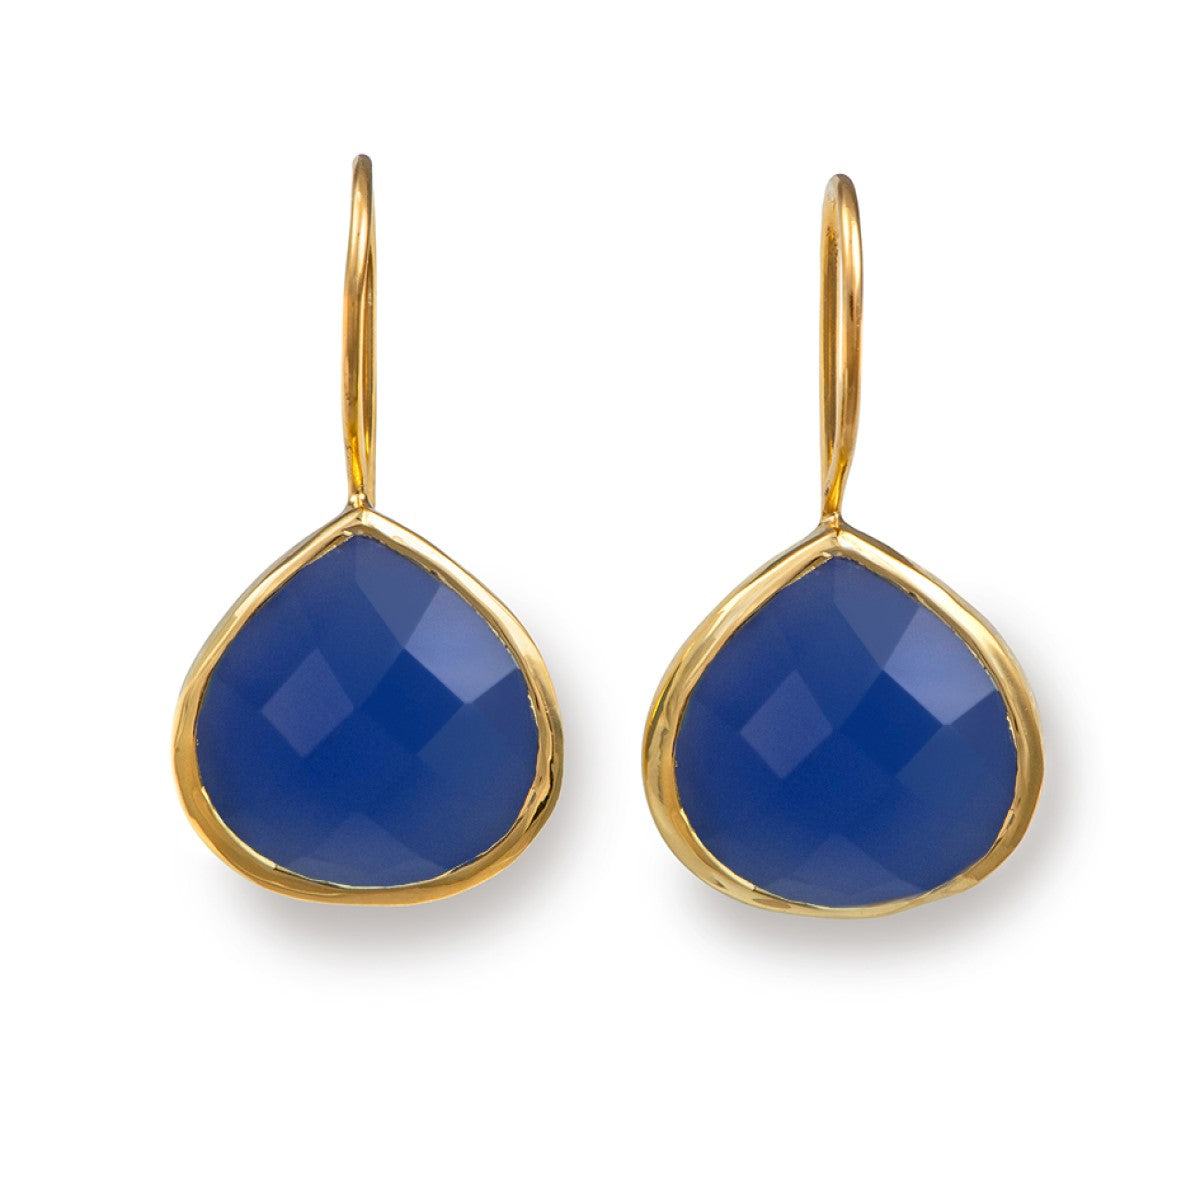 Blue Chalcedony Gemstone Teardrop Earrings in Gold Plated Sterling Silver